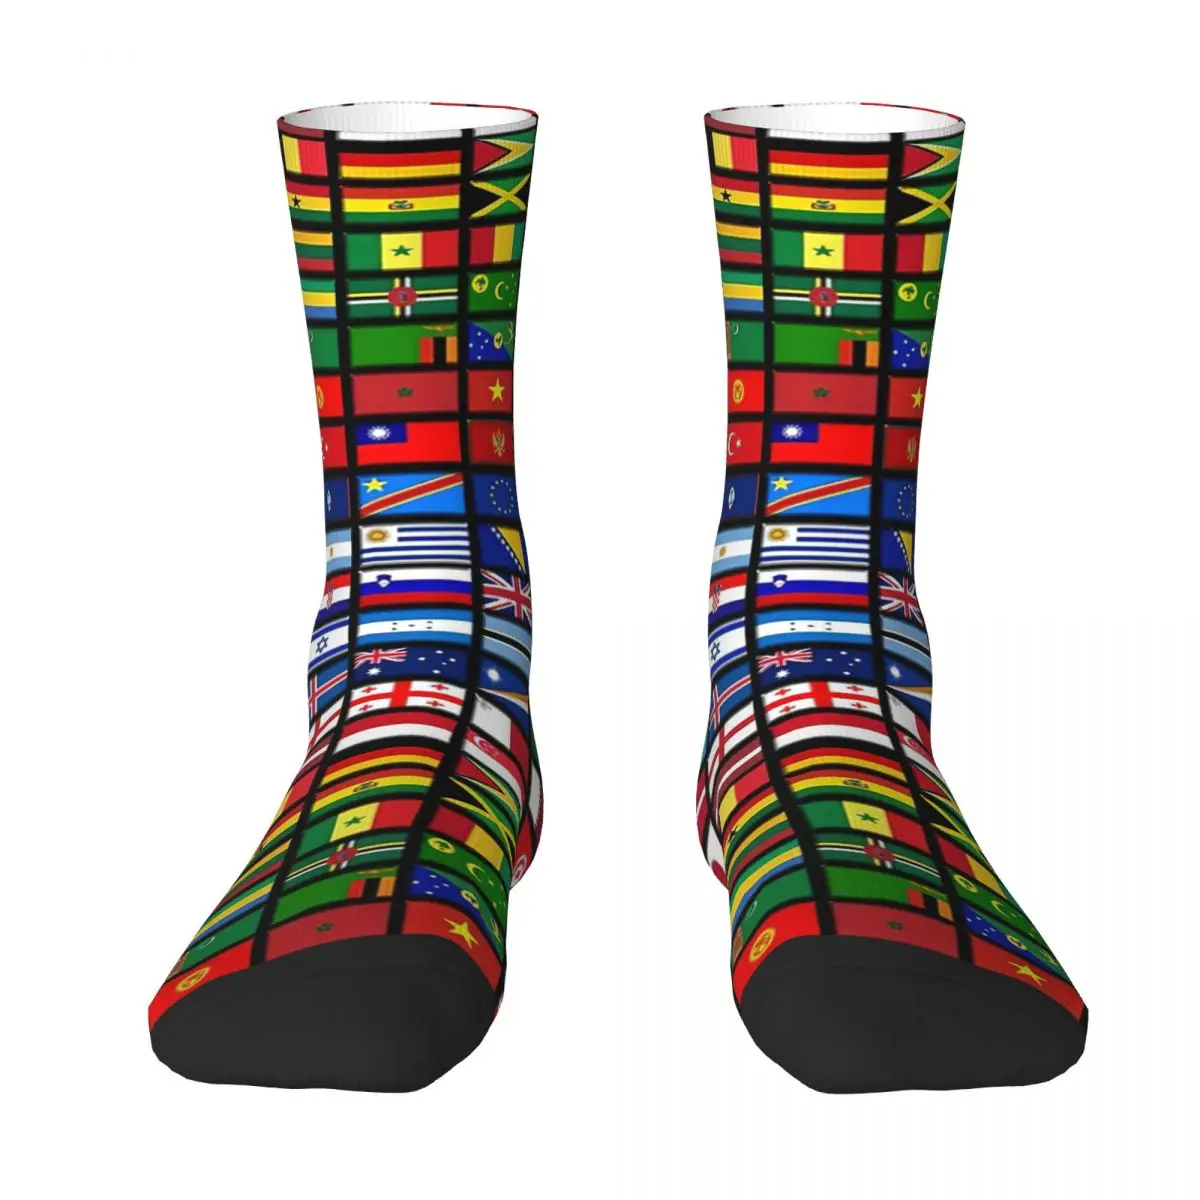 international Flags Of The Countries Of The World, International Adult Socks Unisex socks,men Socks women Socks